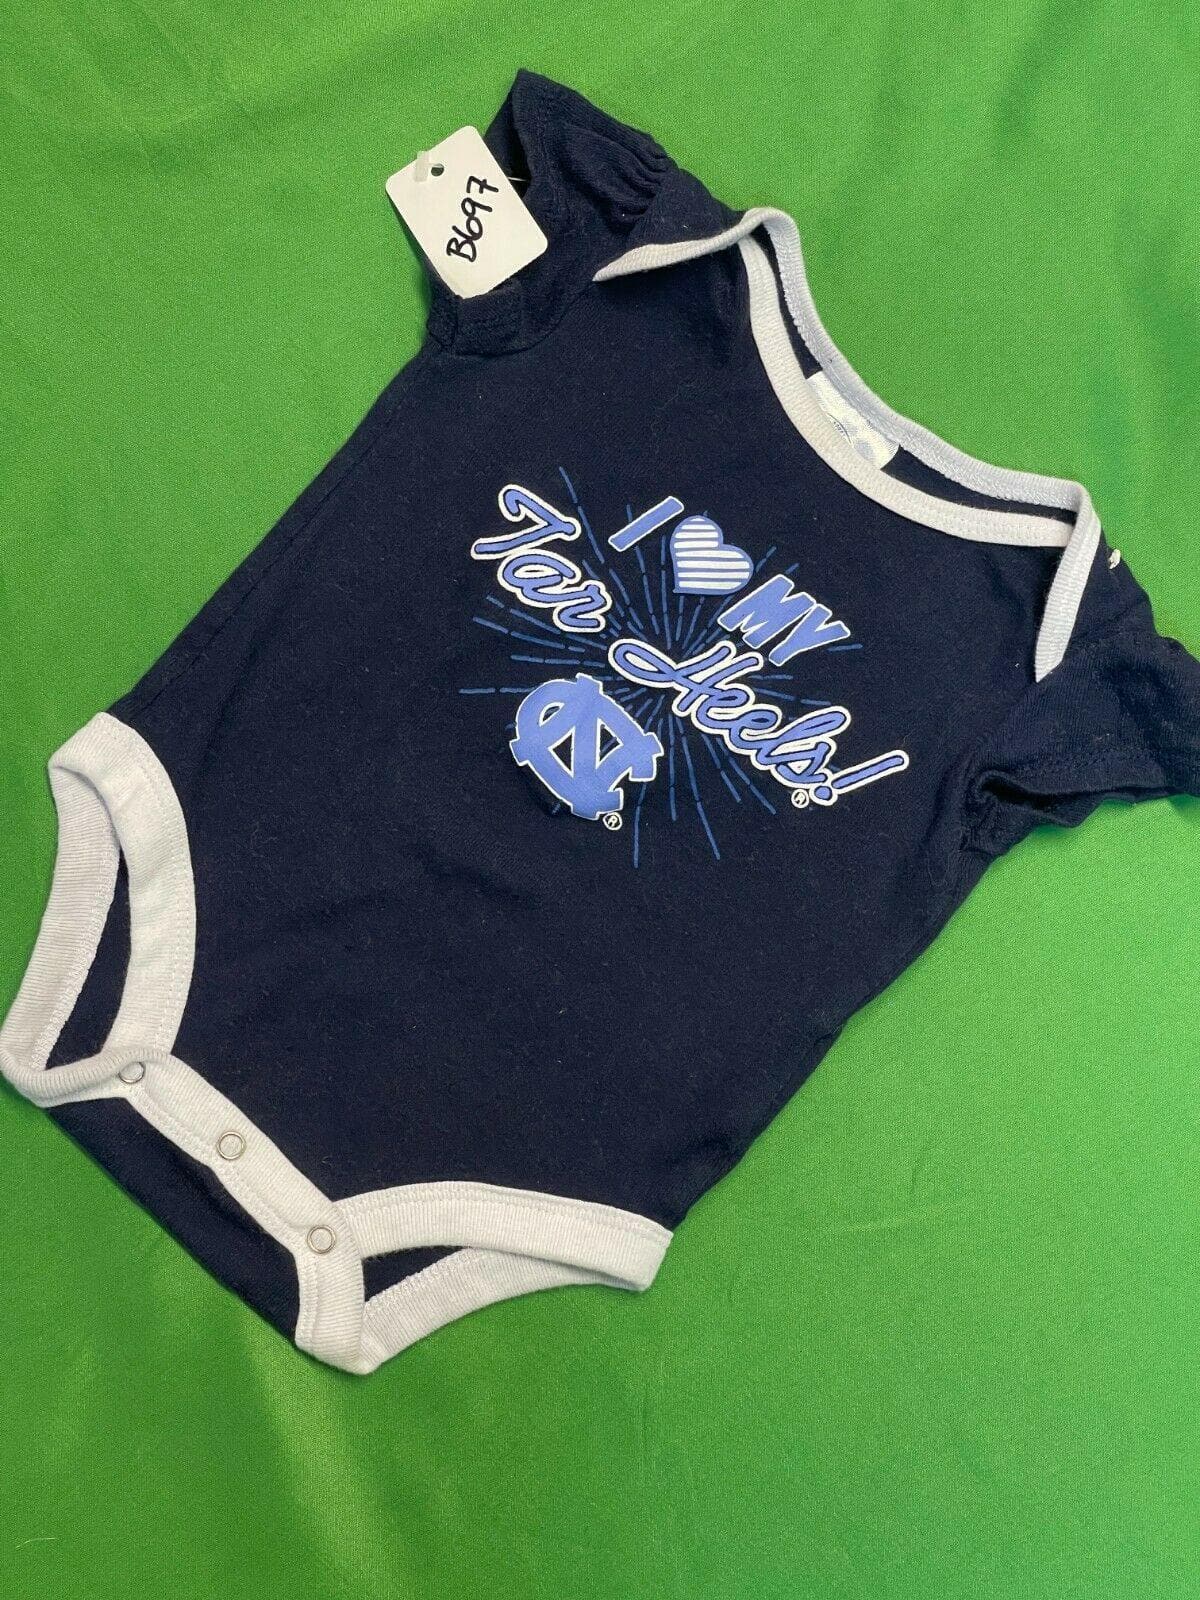 Kids' (Infant) North Carolina Tar Heels T-Shirt (K2SAKS 60I) – SVP Sports